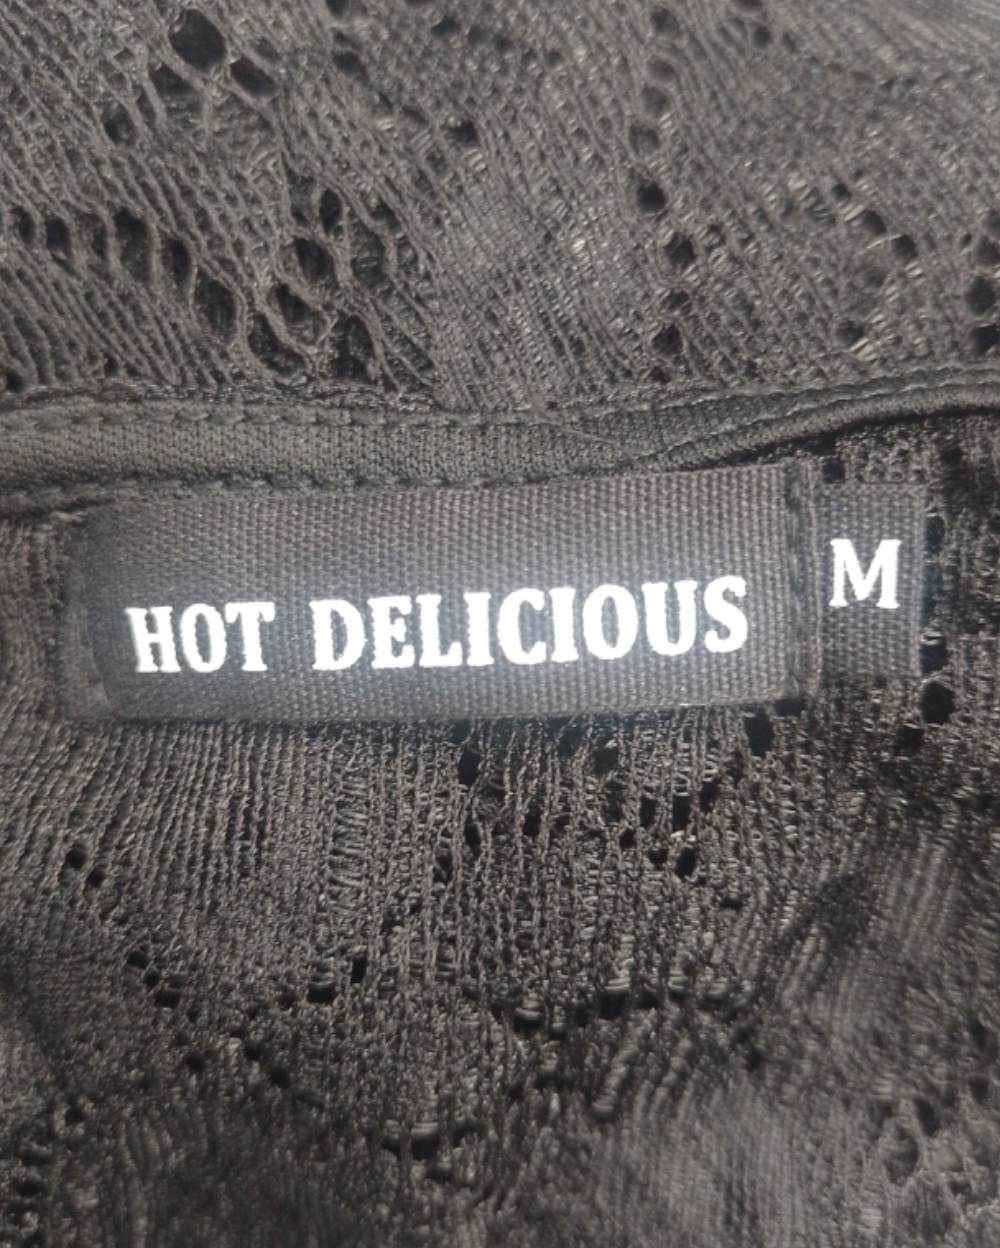 Blusas Casuales Hot delicious